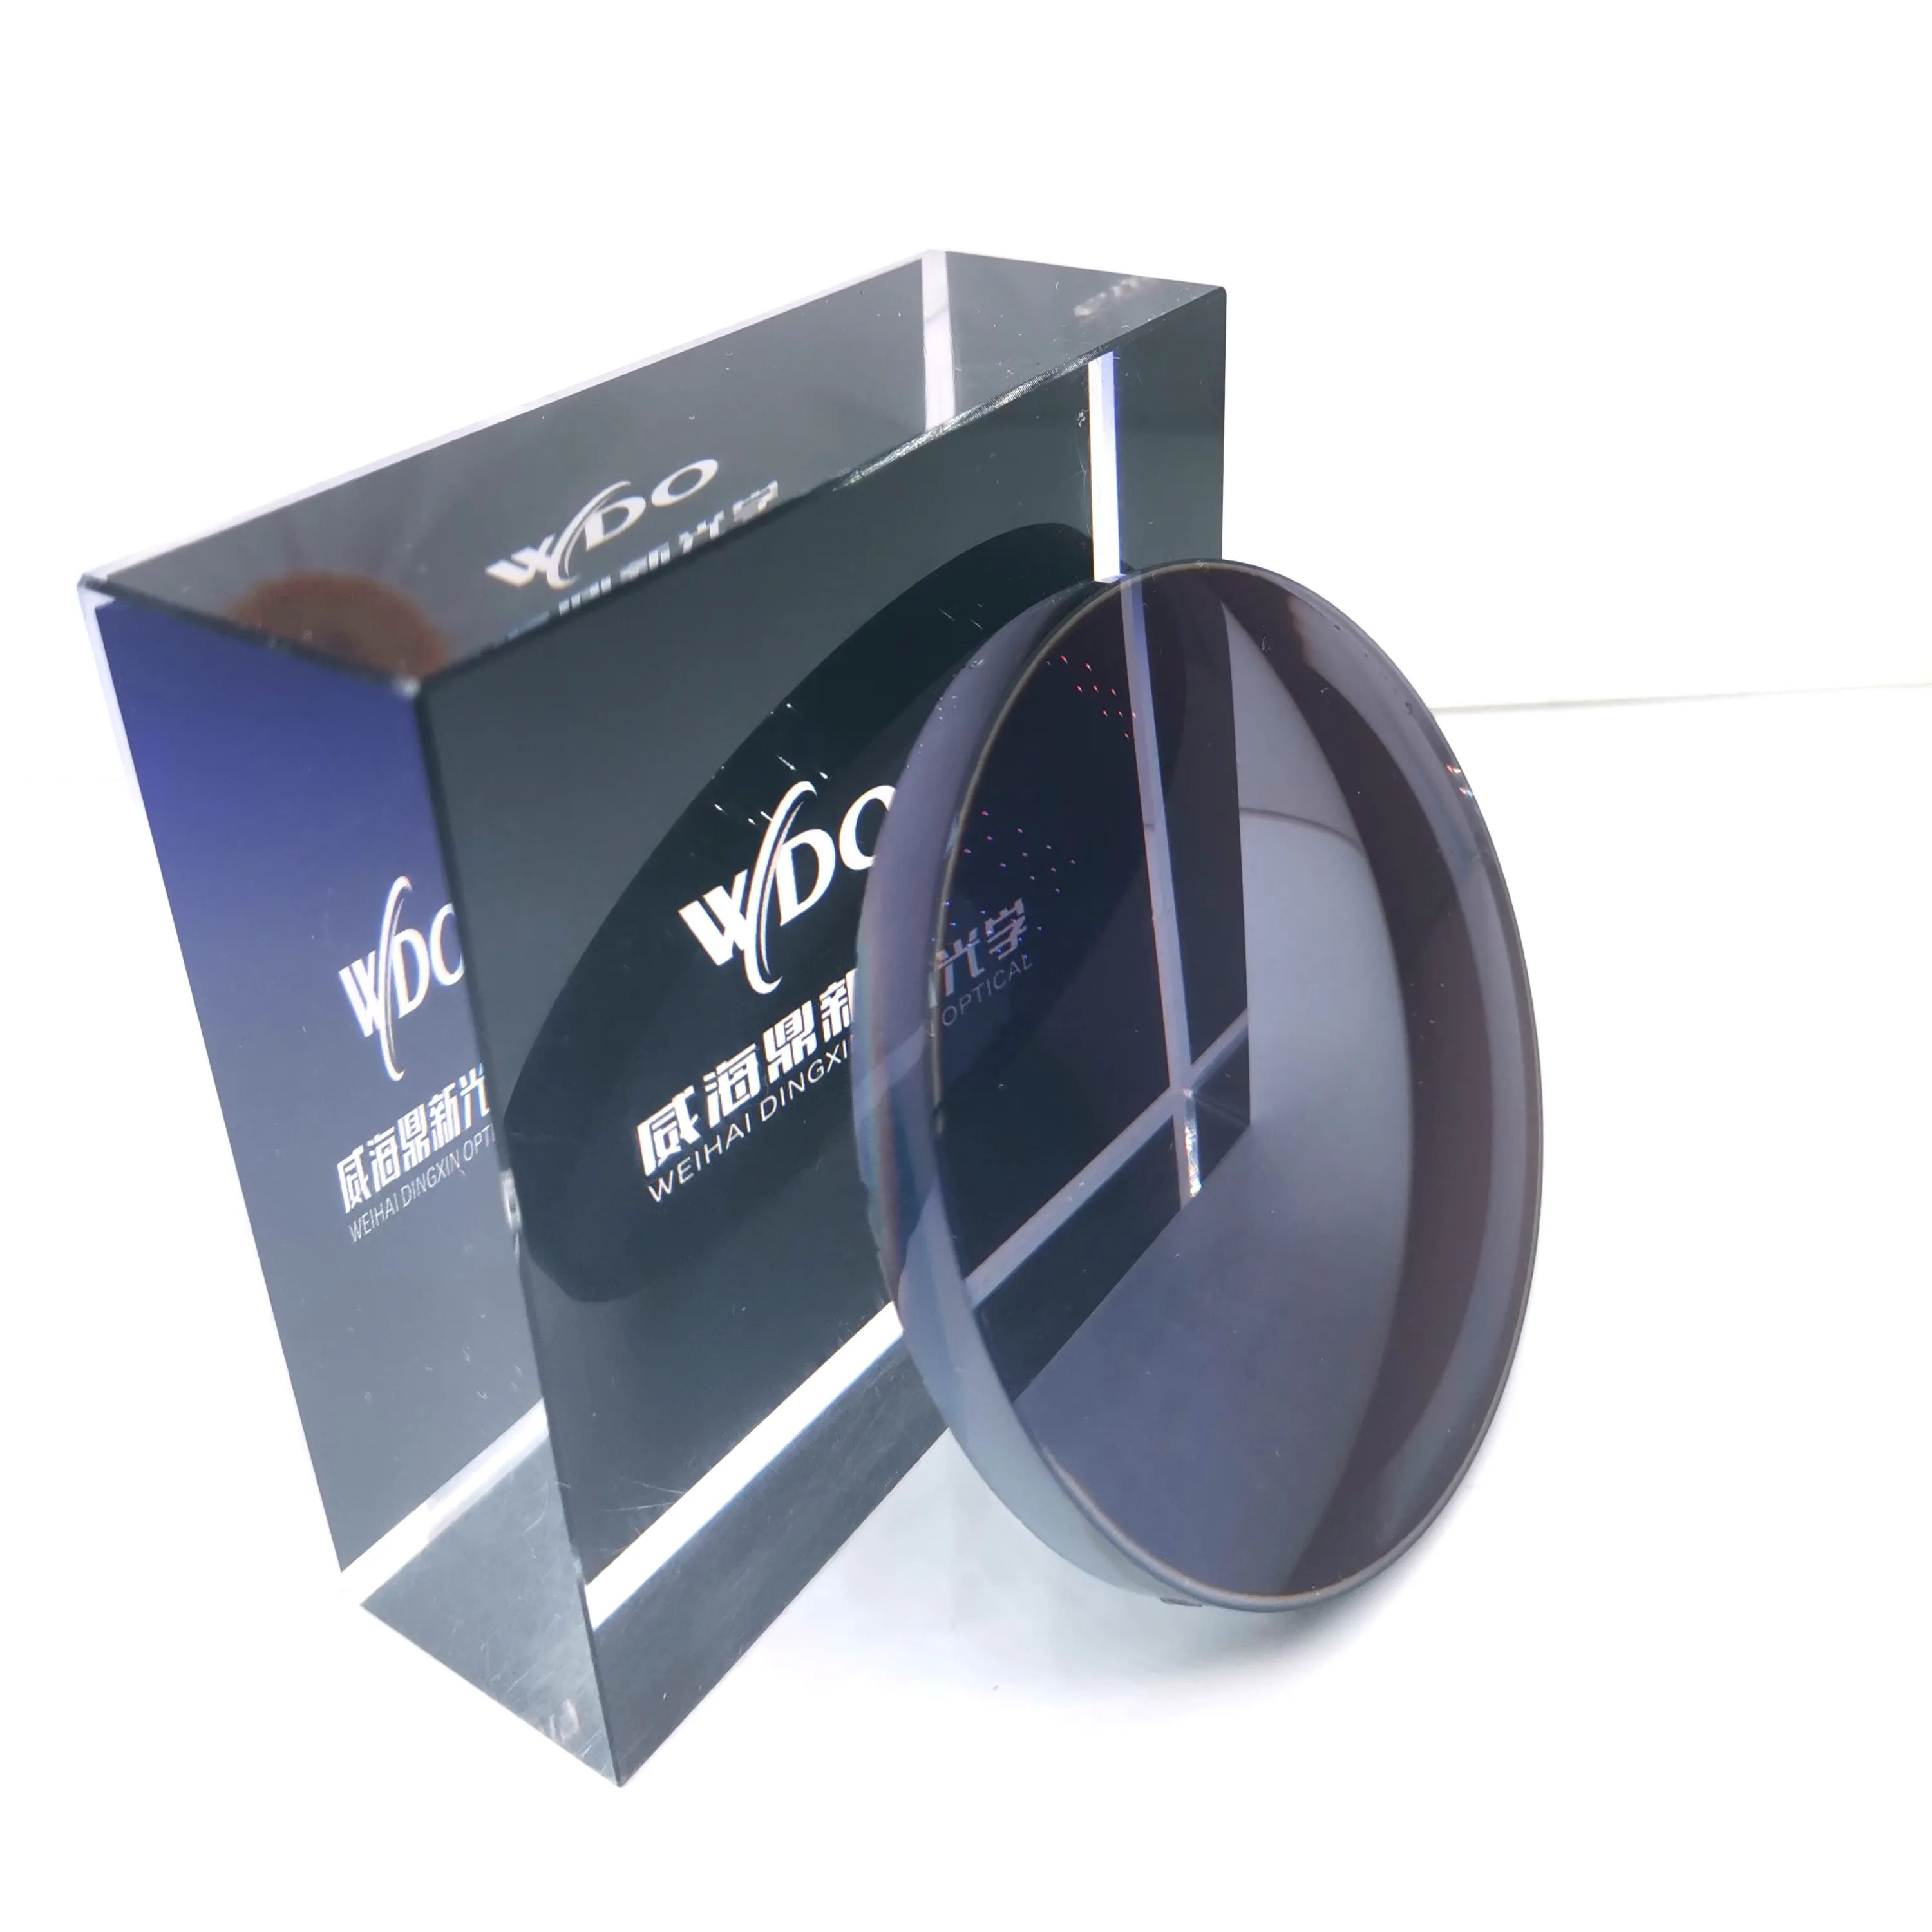 WDO 1.56 Photochromic optical lenses optic len photochromic lens eyeglasses lenses optic lens manufacturer